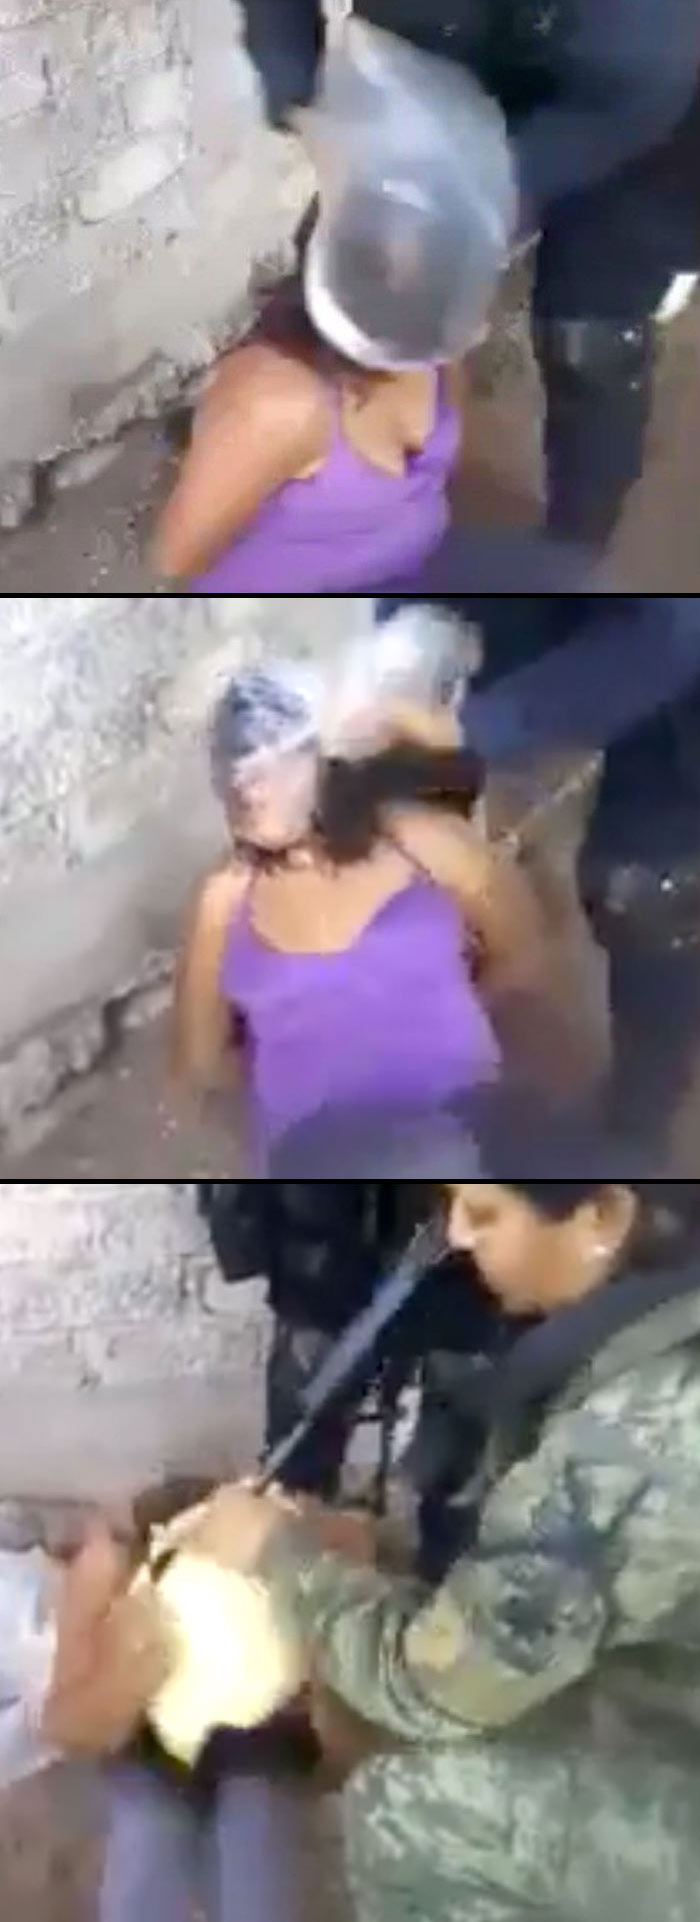 Tortura Tortura En Mexico Video Tortura Video Tortura Mexicana